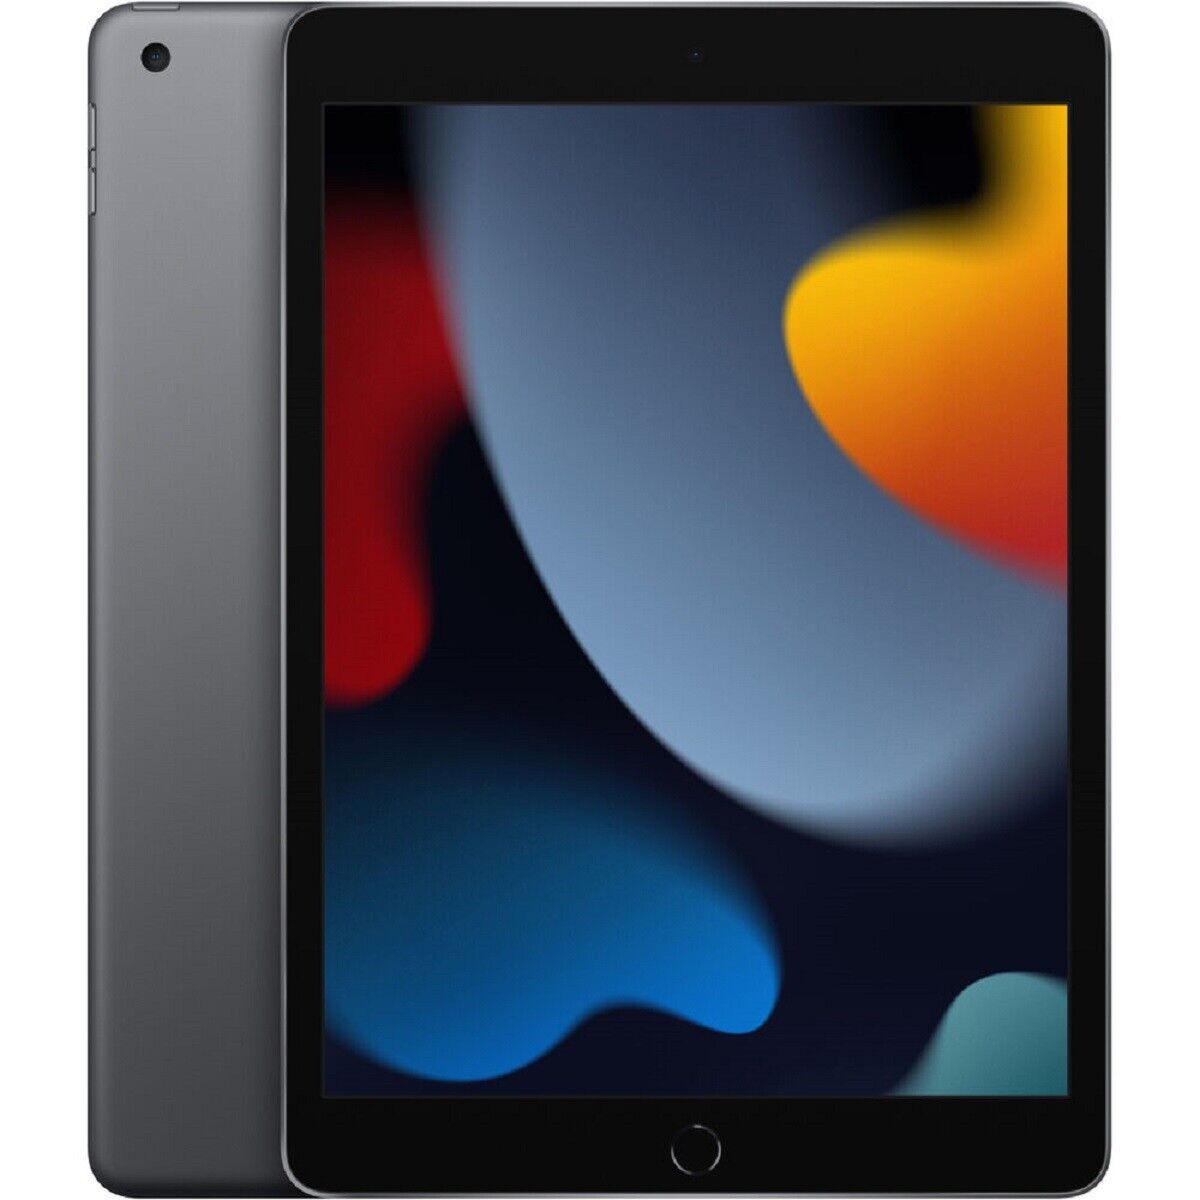 Apple iPad 9th Generation 10.2 Inch Wi-Fi Cellular 64GB - Space Grey (New)